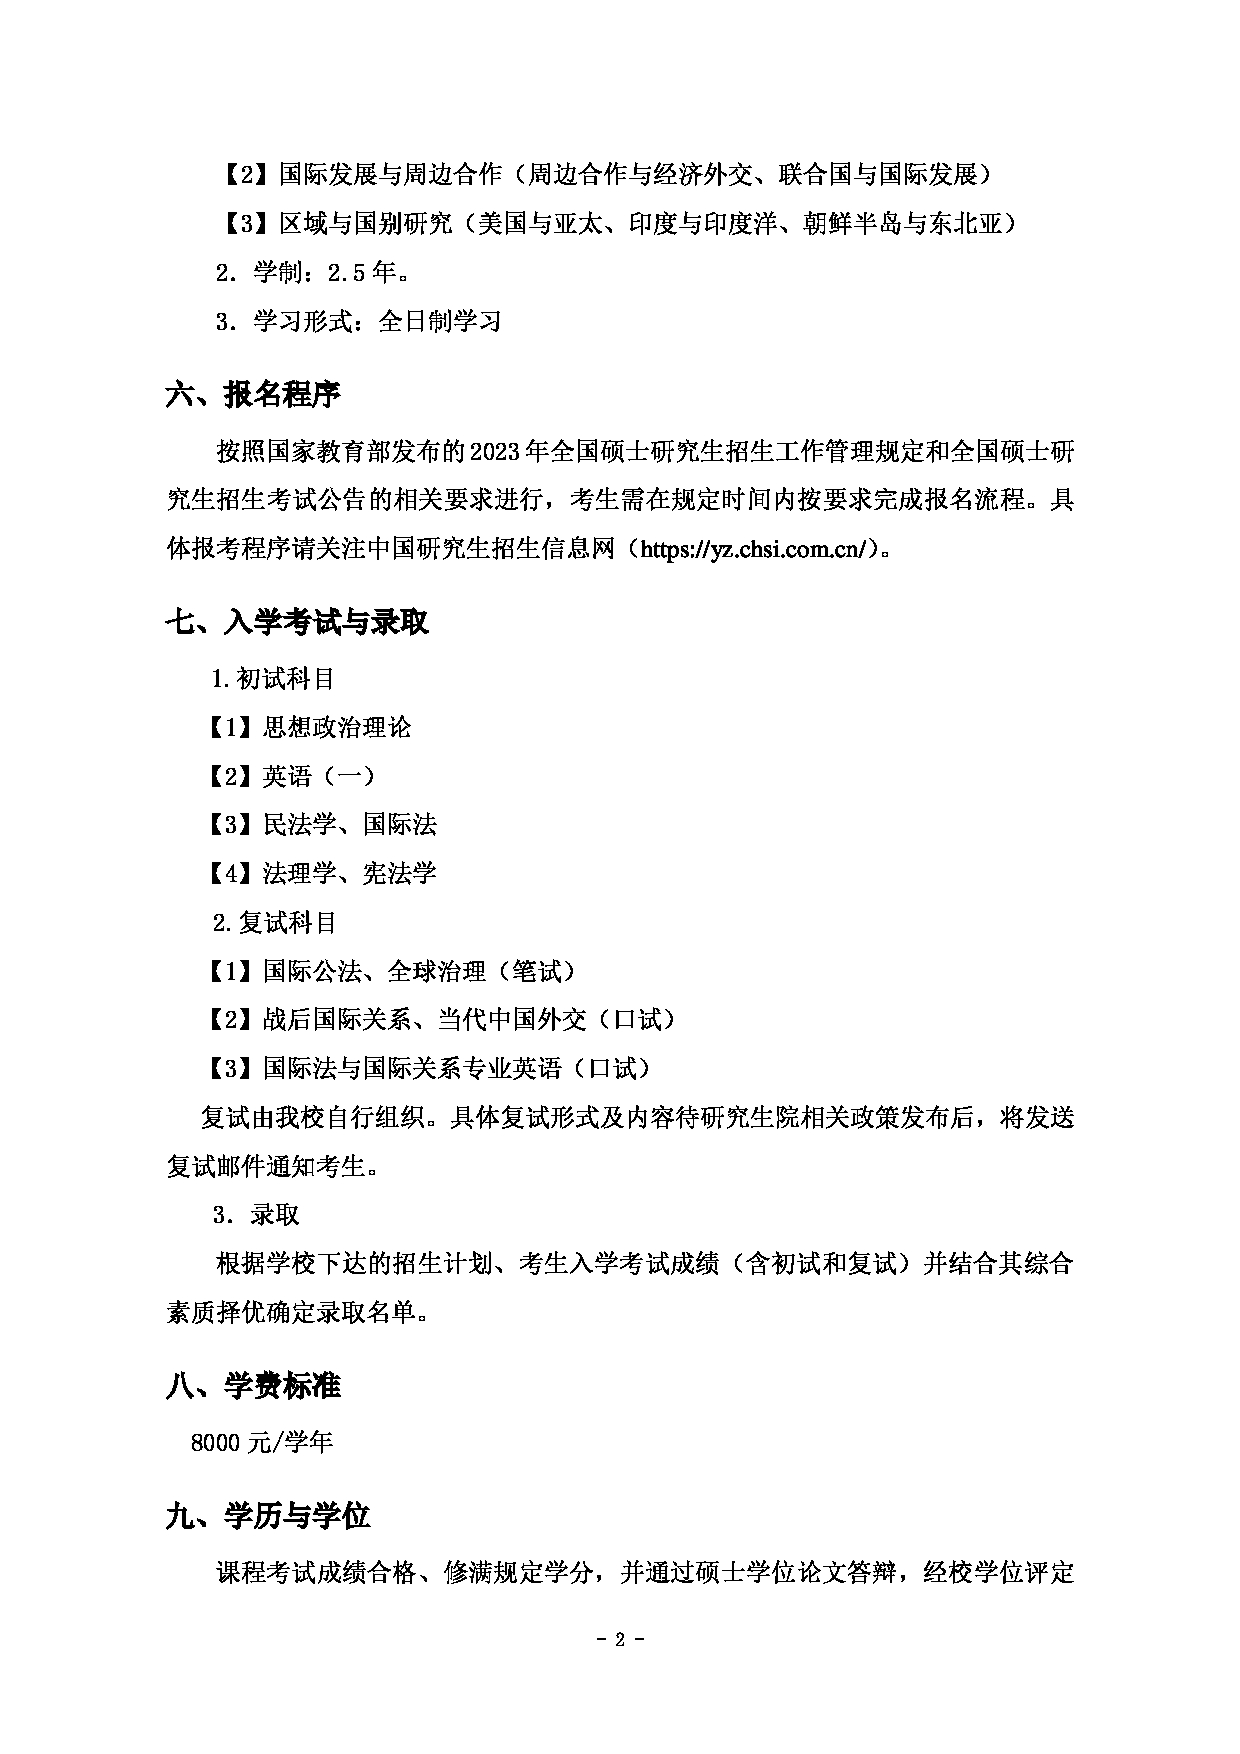 2023招生简章：上海对外经贸大学2023年国际法与国际关系学术学位硕士研究生招生简章第2页